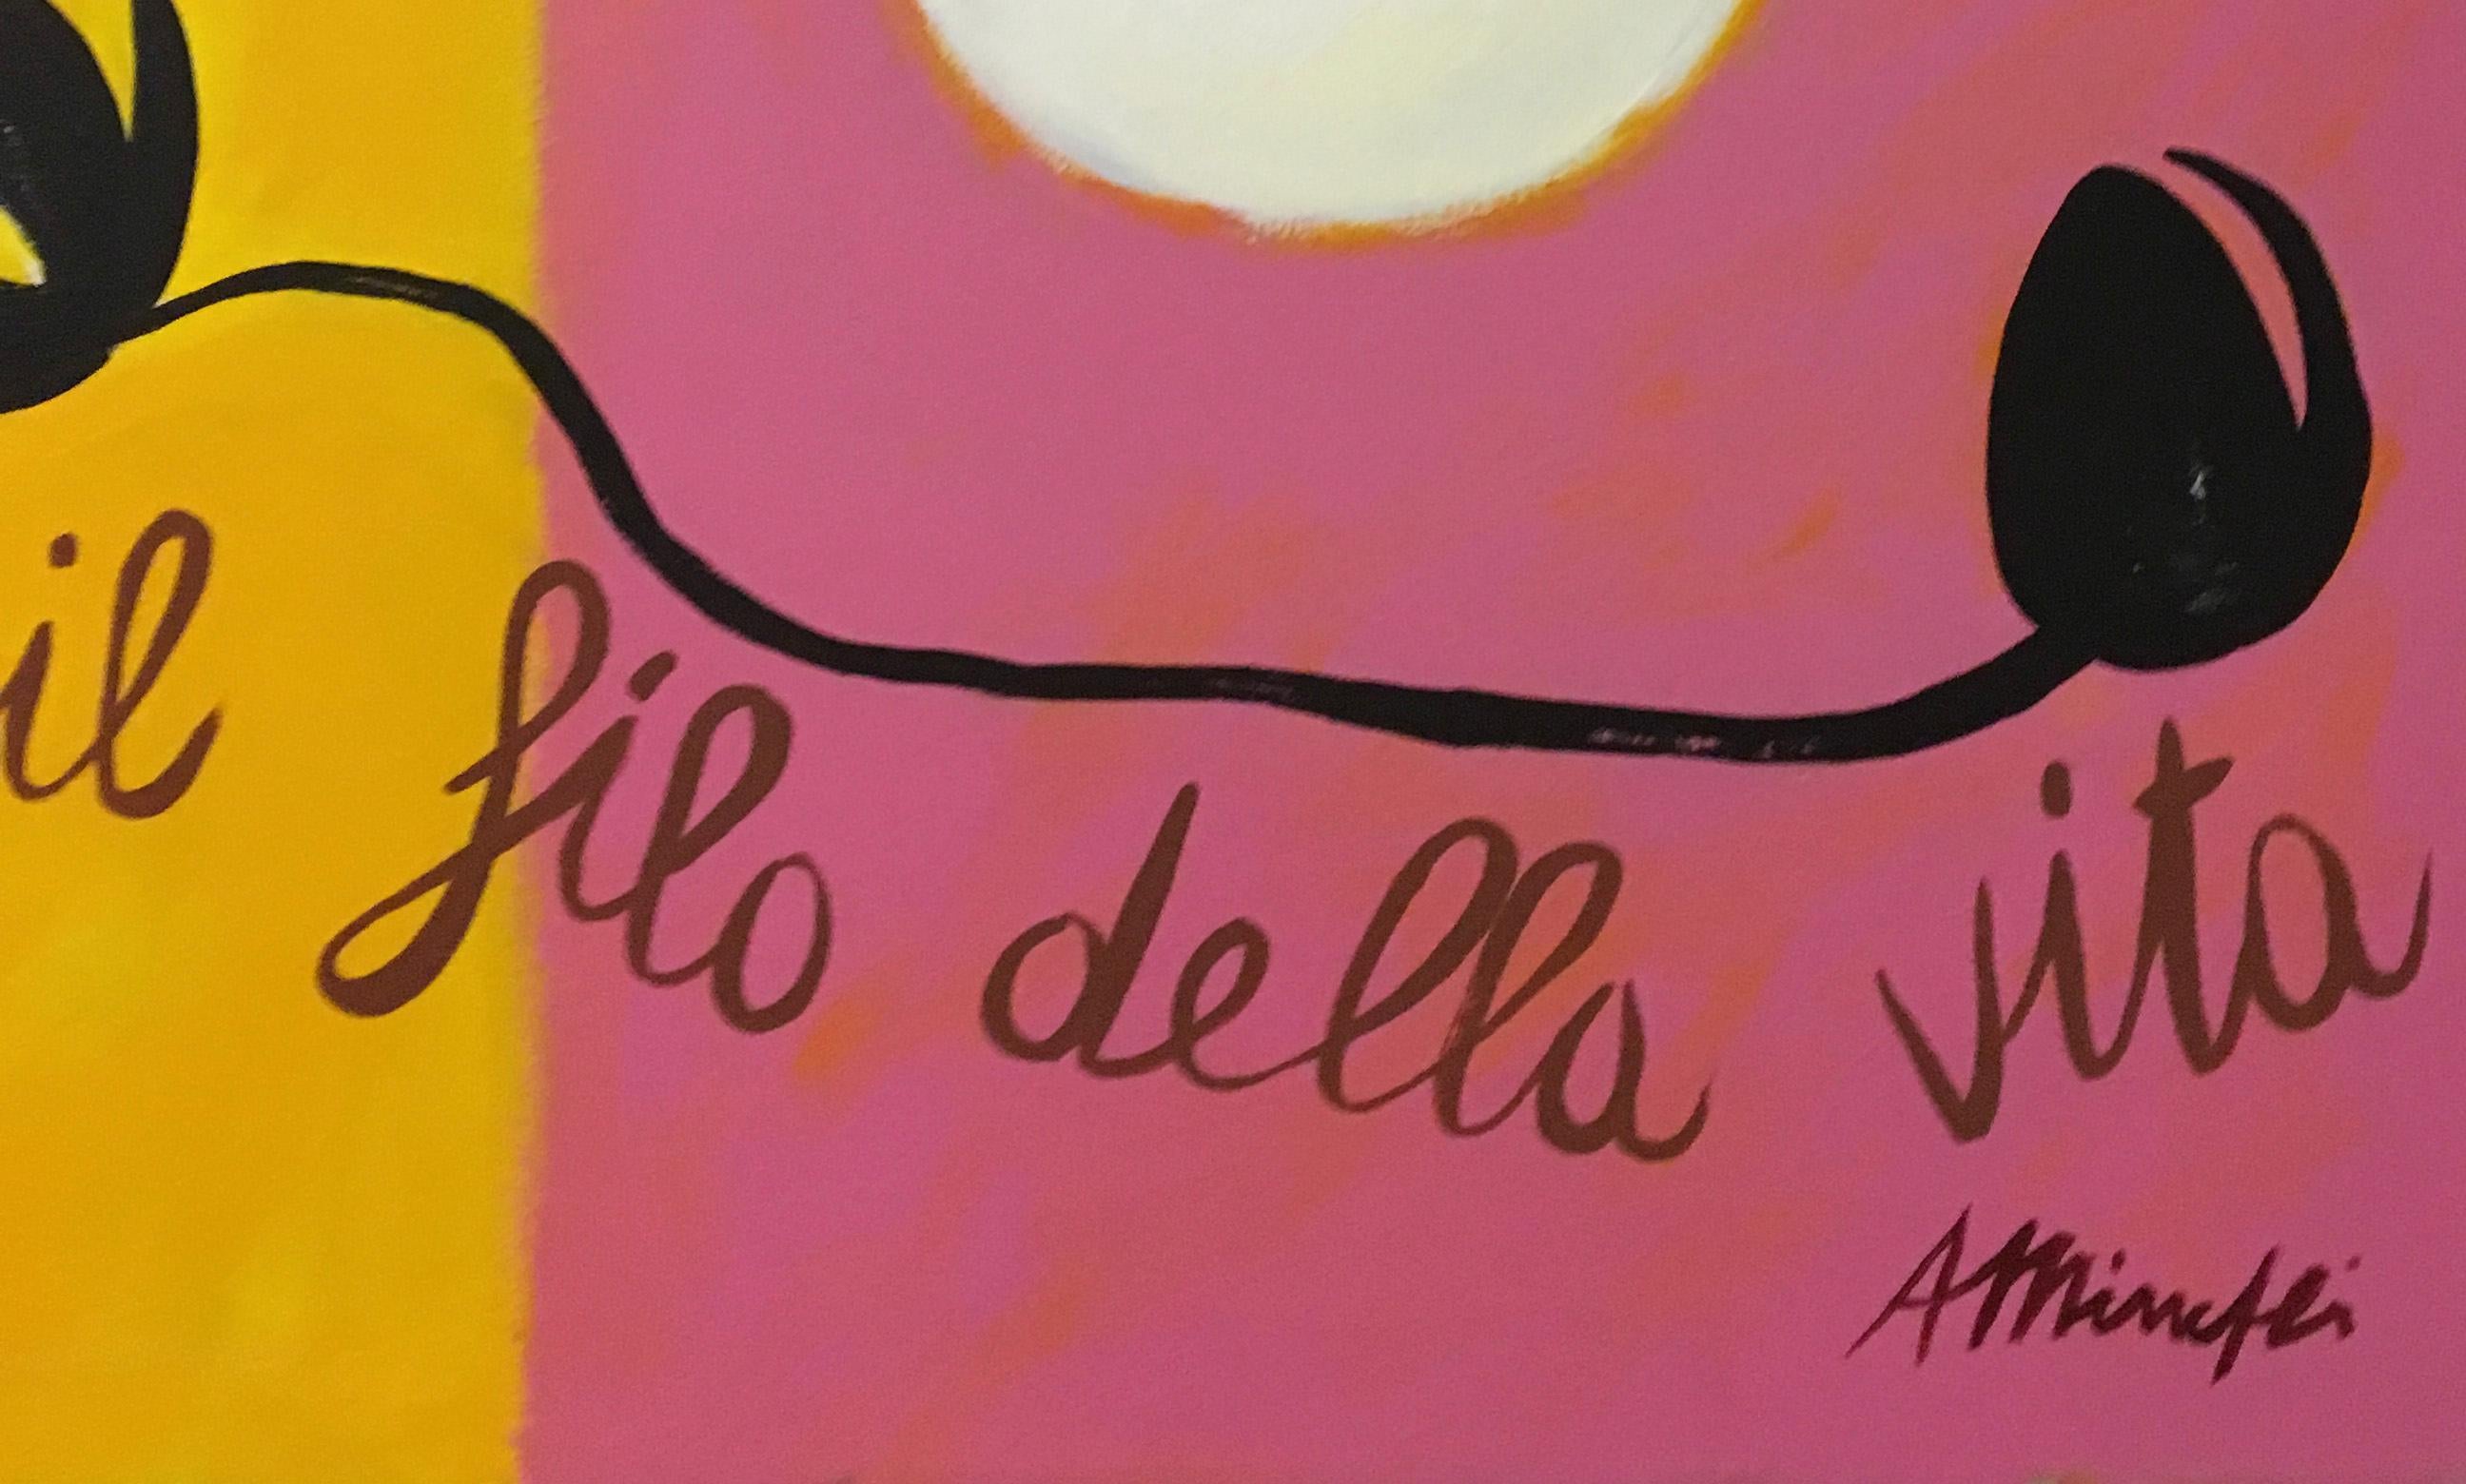 CLOTO TESSE IL FILO DELLA VITA - Oil on canvas painting, Antonio Minopoli For Sale 1